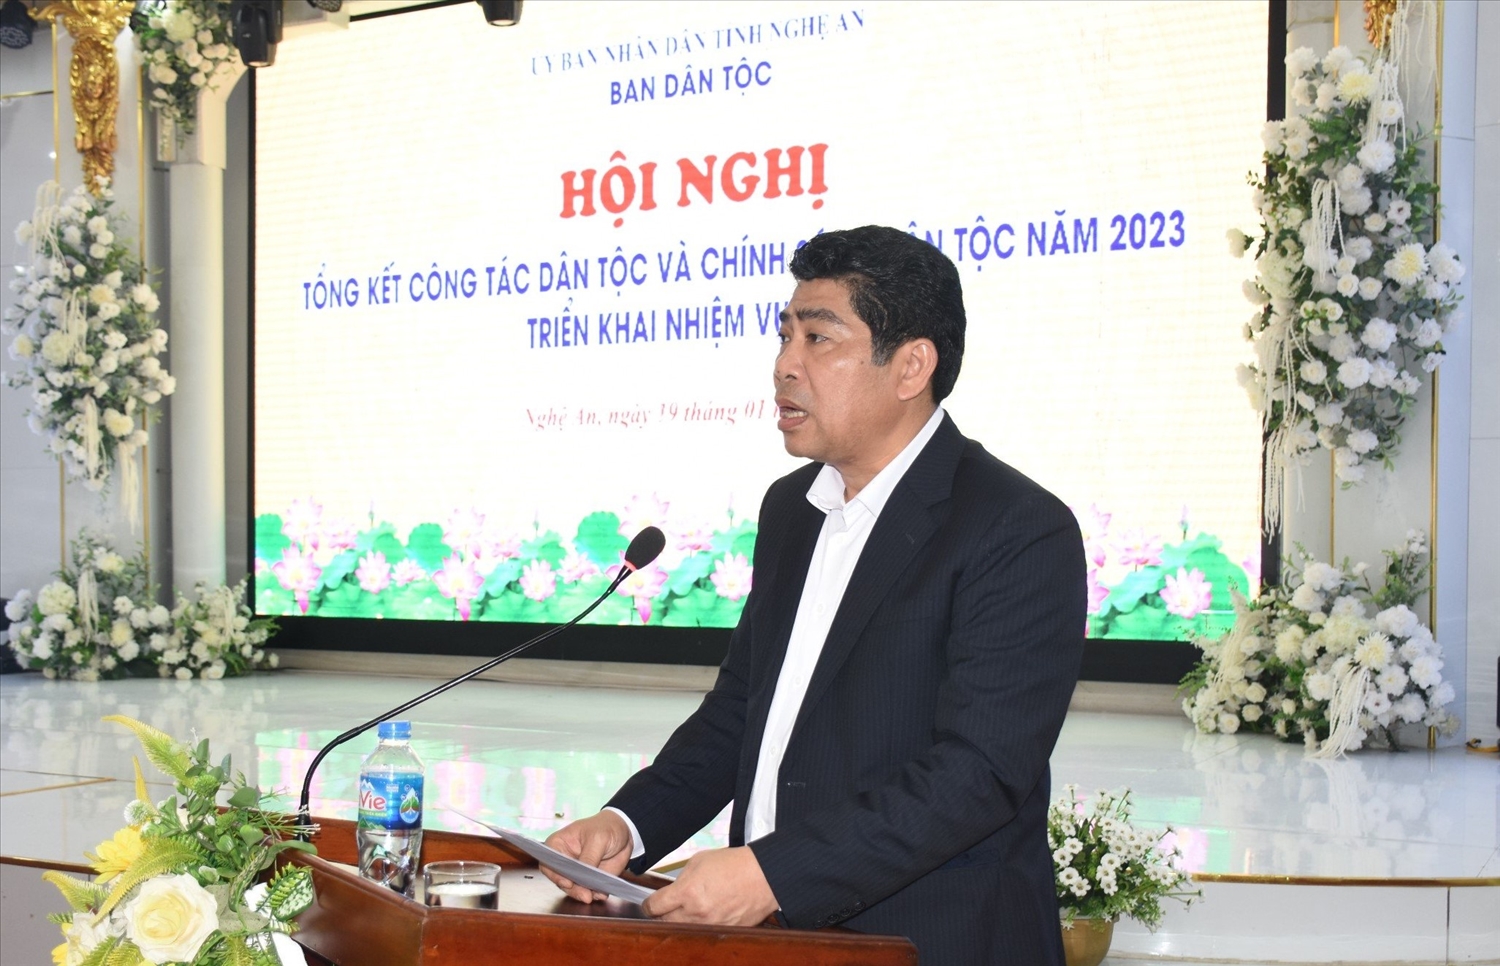 Trưởng Ban Dân tộc Nghệ An Vi Văn Sơn phát biểu khai mạc hội nghị